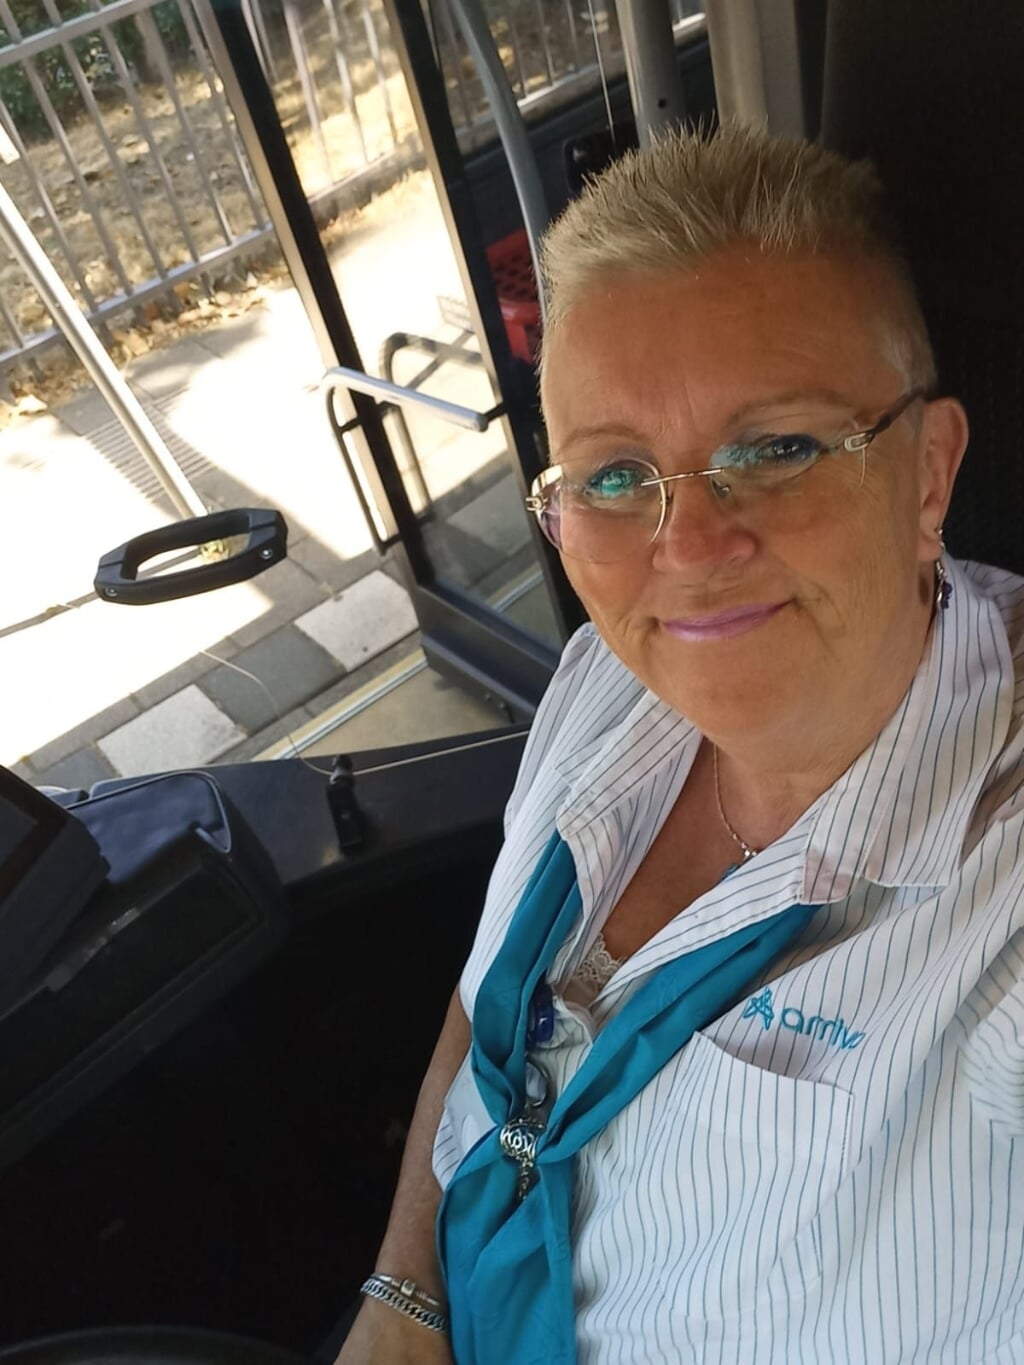 Geen vakantie voor Maya van Kessel. De Boxtelse rijdt deze zomer haar routes als buschauffeur in en rond Den Bosch. 